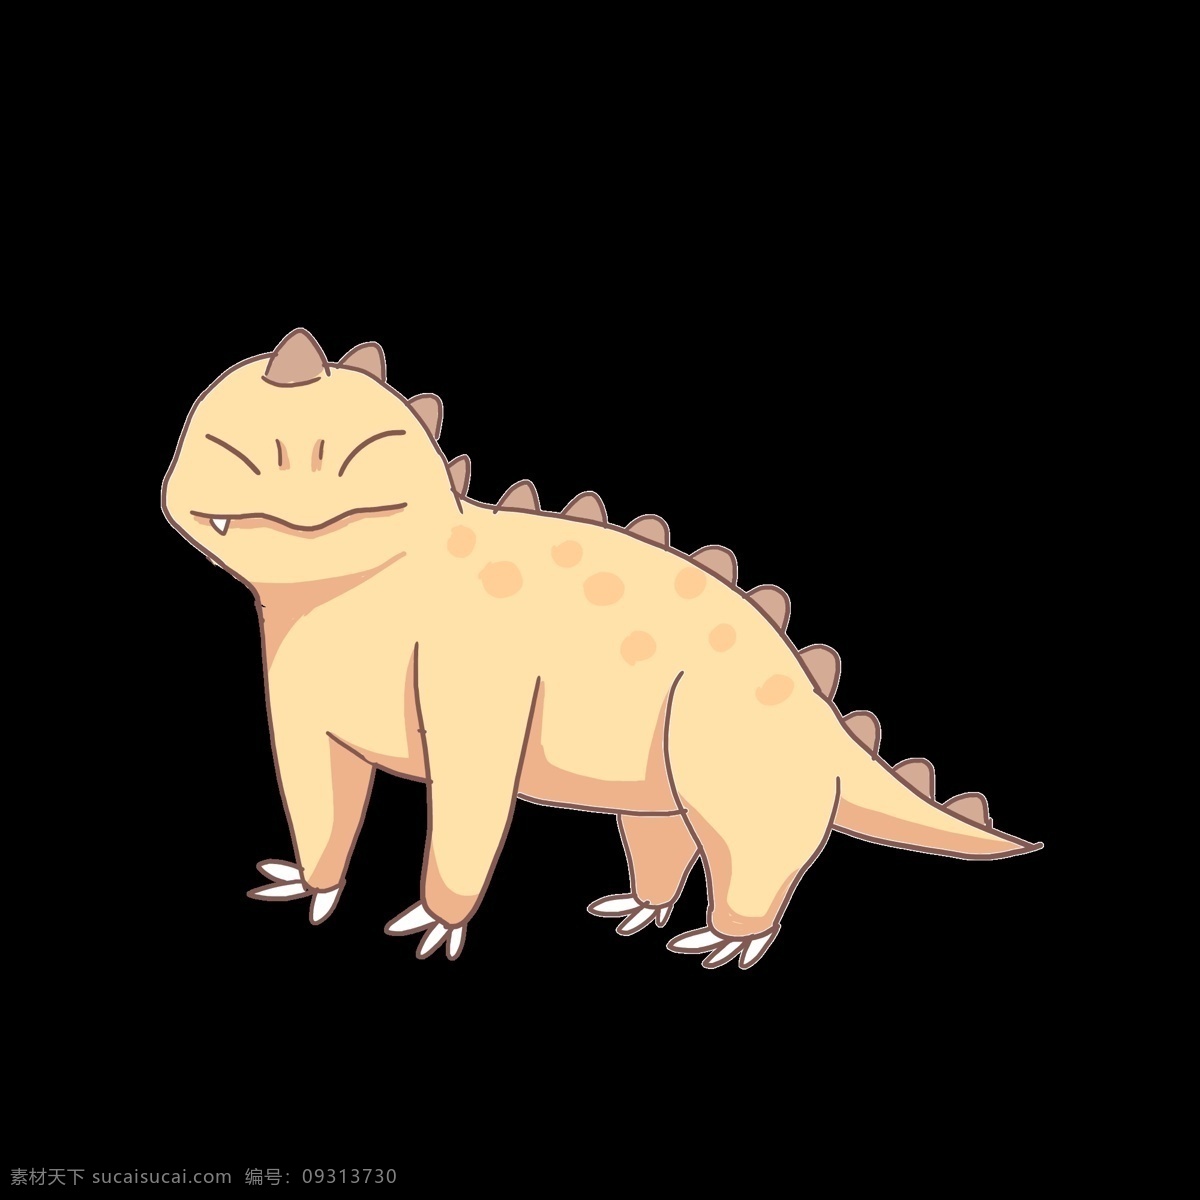 卡通 黄色 恐龙 插画 黄色恐龙 可爱的恐龙 卡通恐龙 灭绝恐龙 小动物 尖爪子 恐龙插画 大恐龙